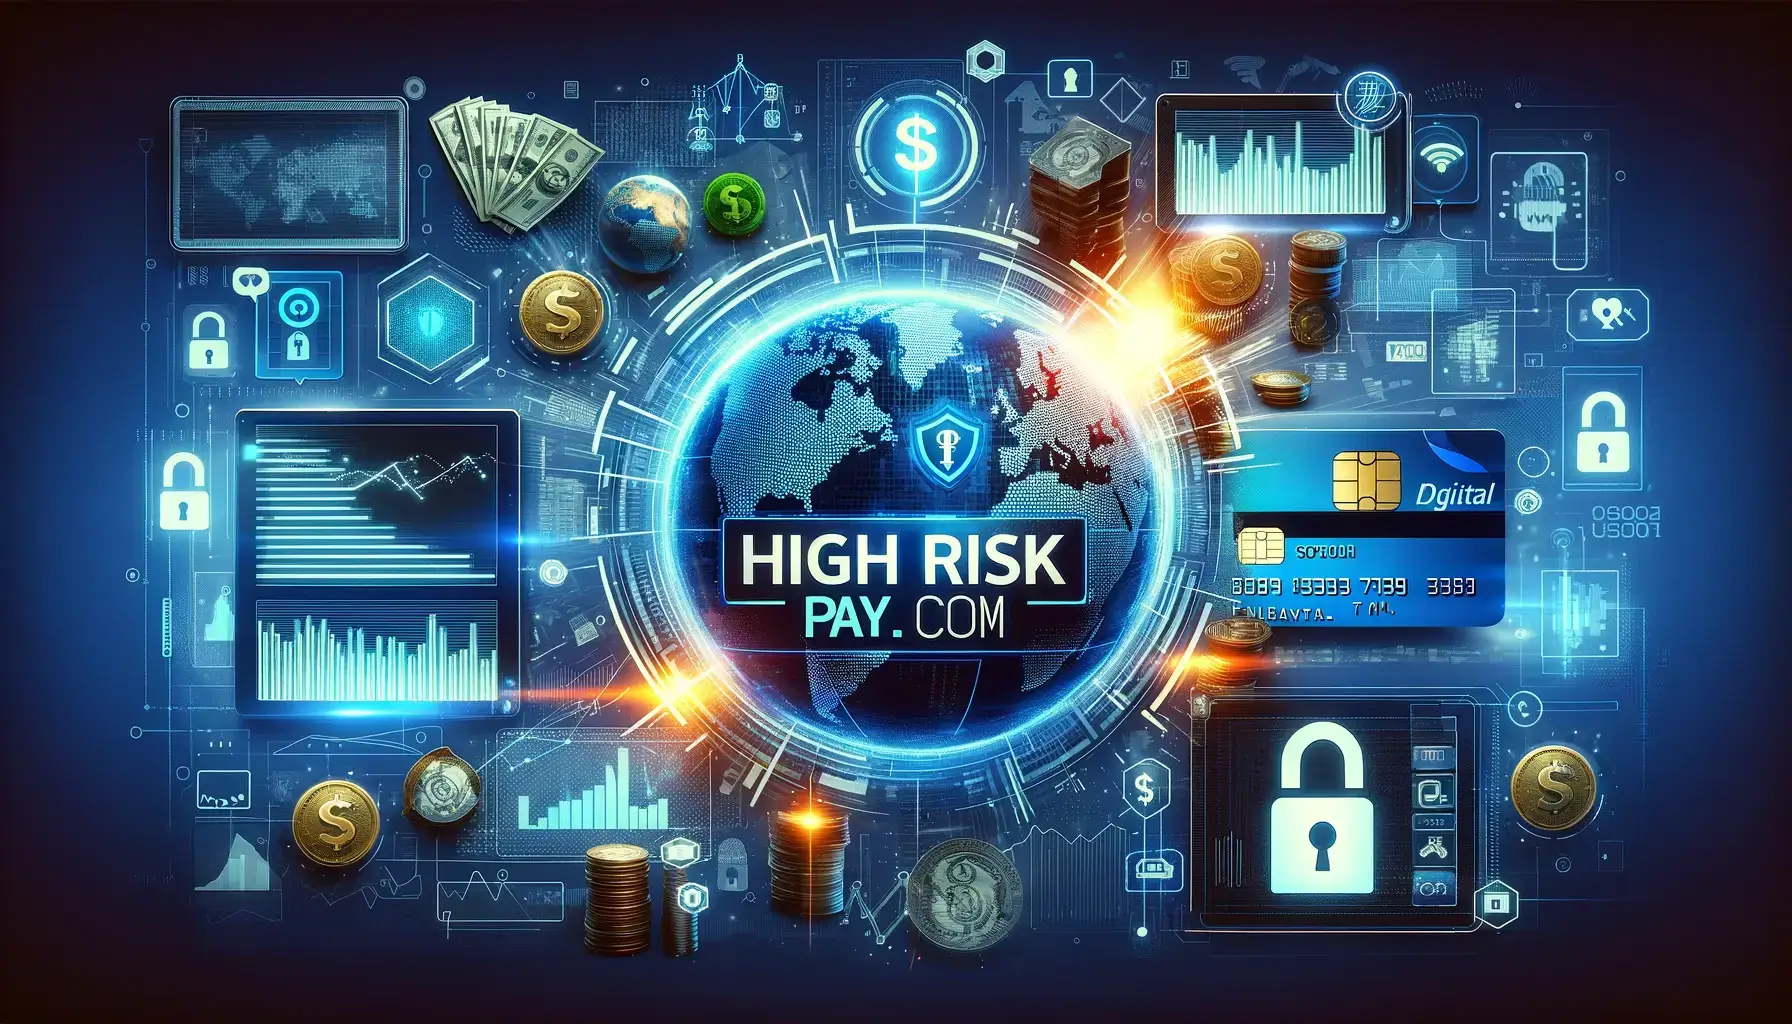 High Risk Merchant Highriskpay.com